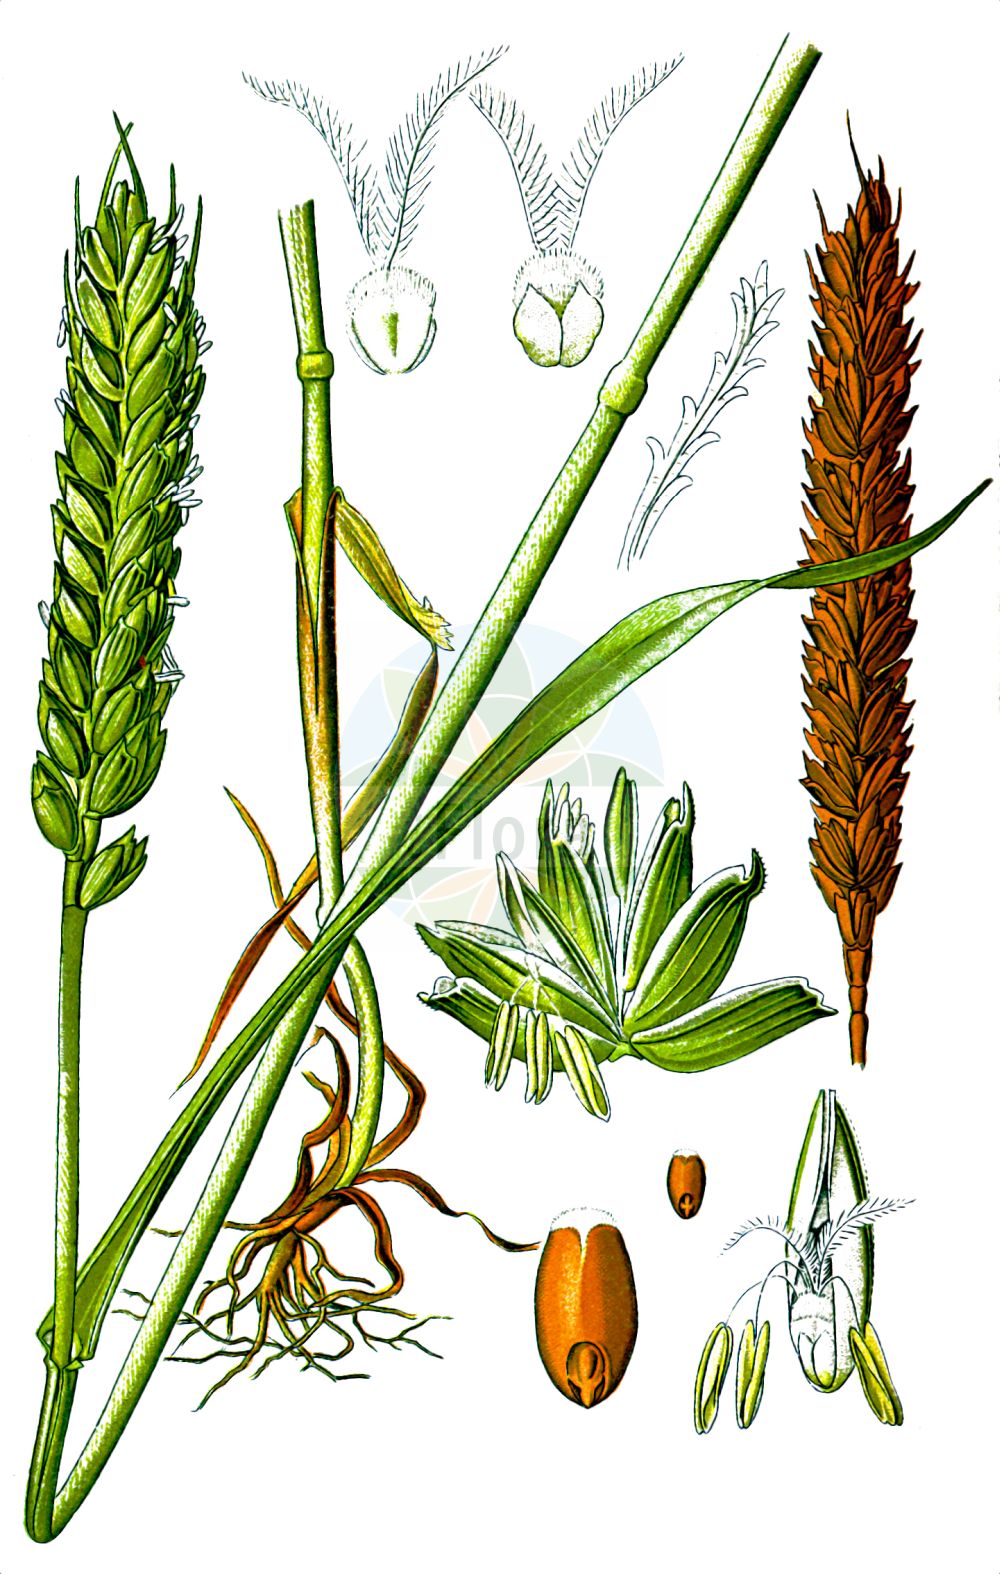 Historische Abbildung von Triticum aestivum (Saat-Weizen - Bread Wheat). Das Bild zeigt Blatt, Bluete, Frucht und Same. ---- Historical Drawing of Triticum aestivum (Saat-Weizen - Bread Wheat). The image is showing leaf, flower, fruit and seed.(Triticum aestivum,Saat-Weizen,Bread Wheat,Triticum aestivum,Saat-Weizen,Weich-Weizen,Bread Wheat,Common Wheat,Soft Wheat,Triticum,Weizen,Wheat,Poaceae,Süßgräser,Grass family,Blatt,Bluete,Frucht,Same,leaf,flower,fruit,seed,Thomé (1885))